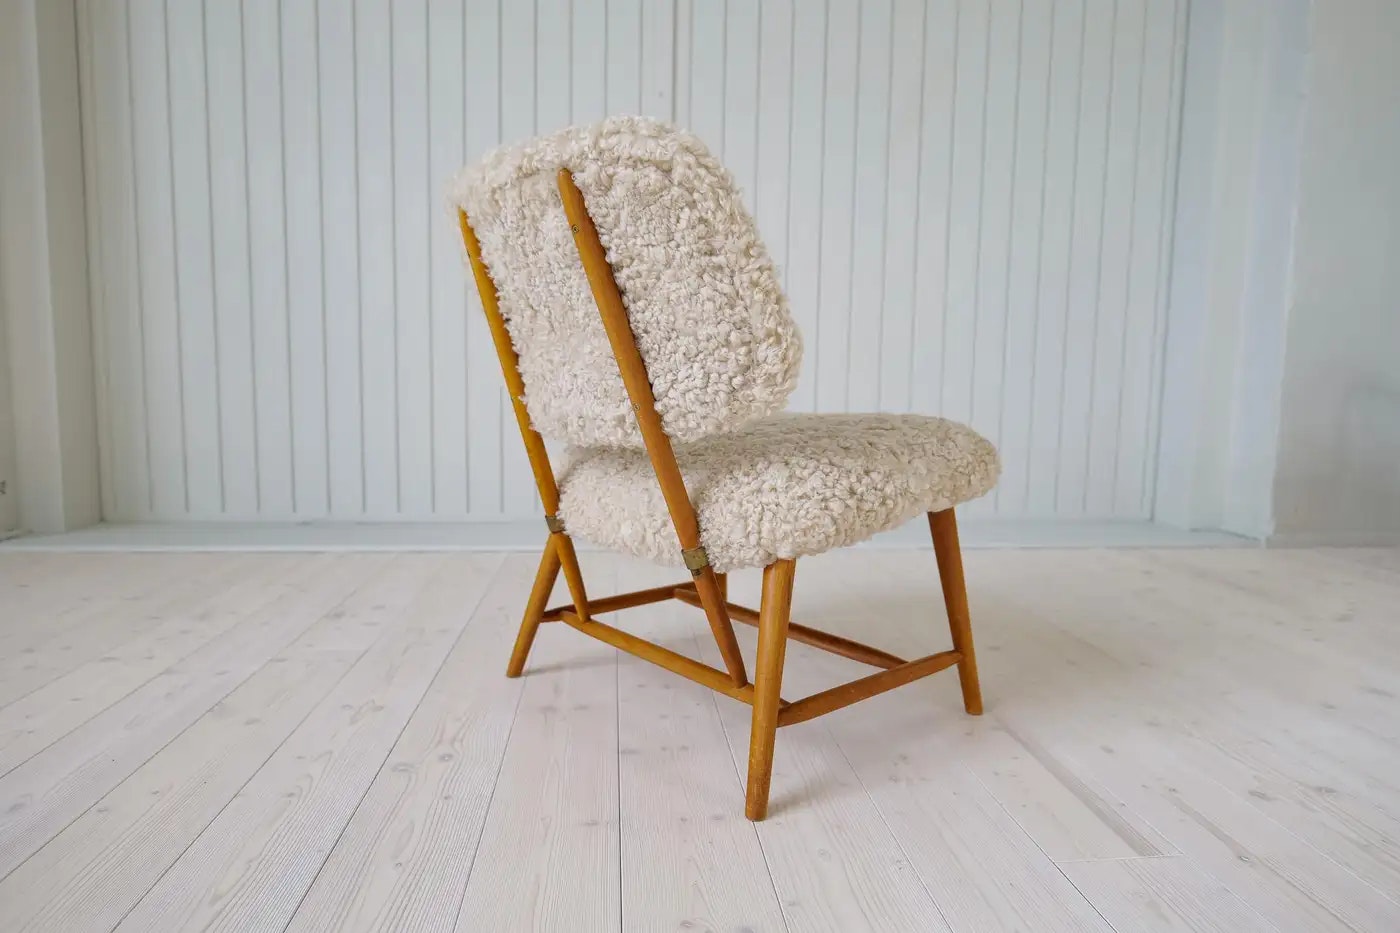 Midcentury Modern "Teve" Chair in Sheepskin/Shearling Alf Svensson, Sweden, 1955